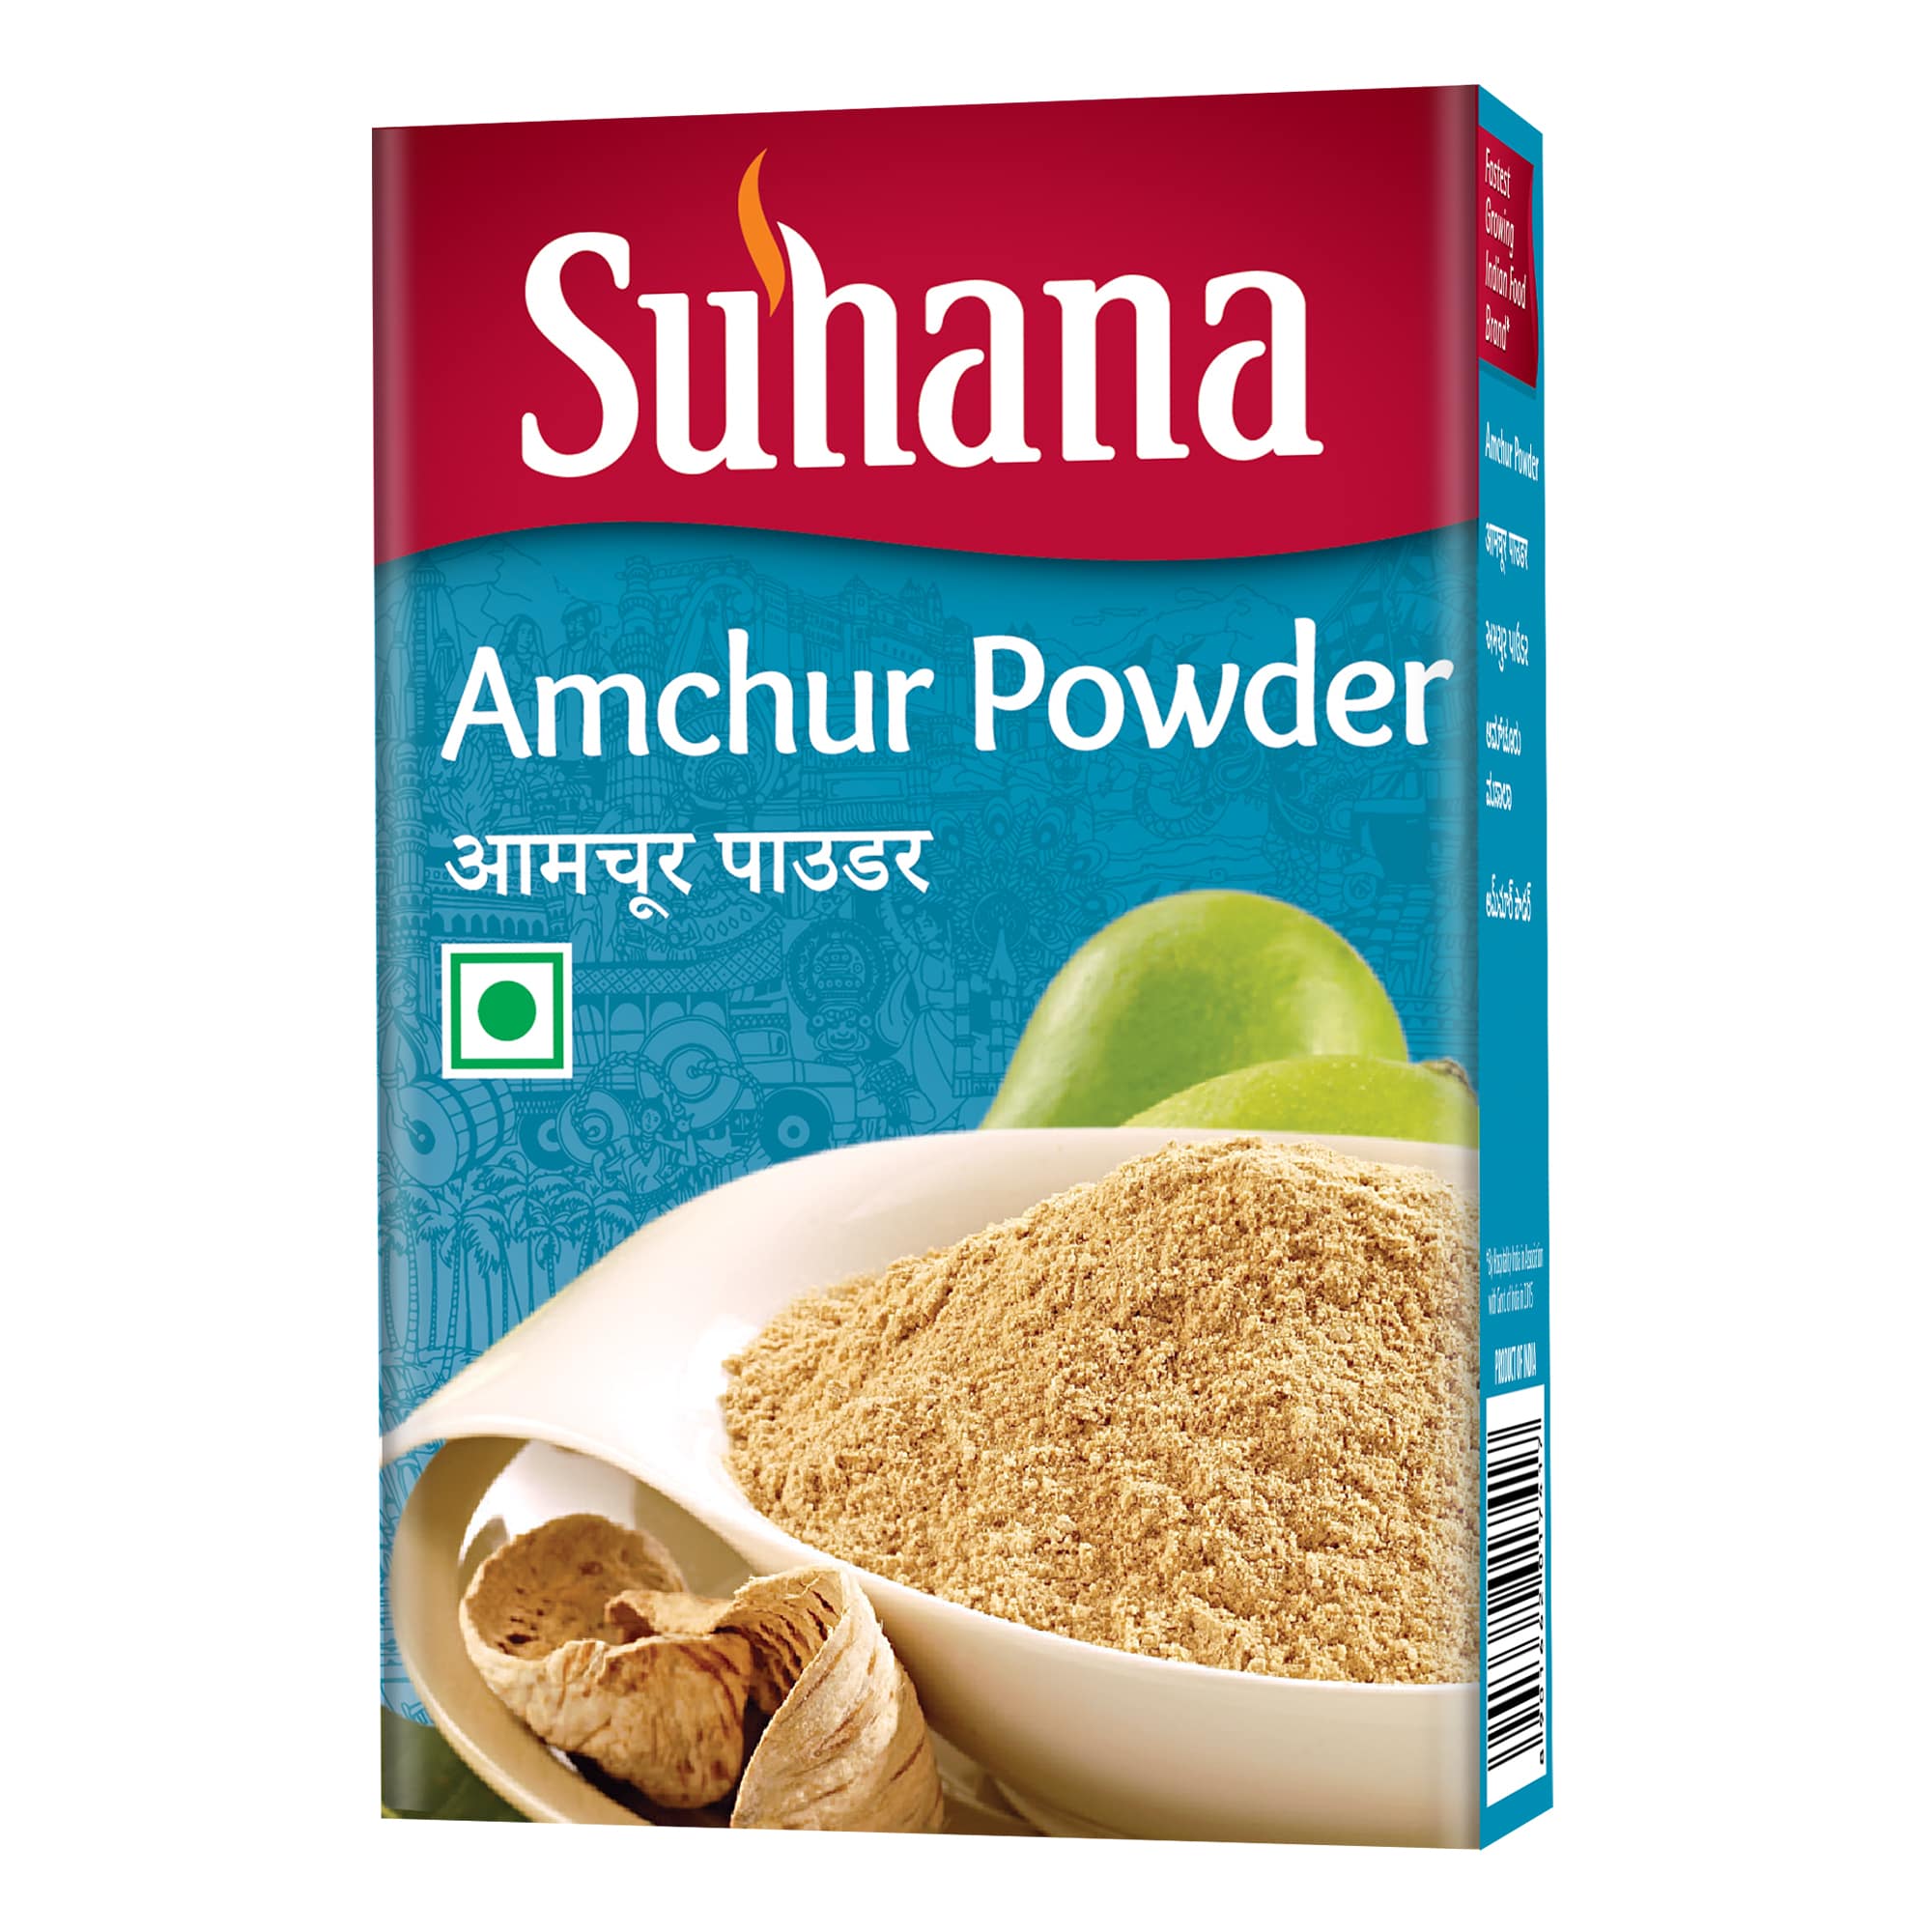 Suhana Amchur Powder 50g Box